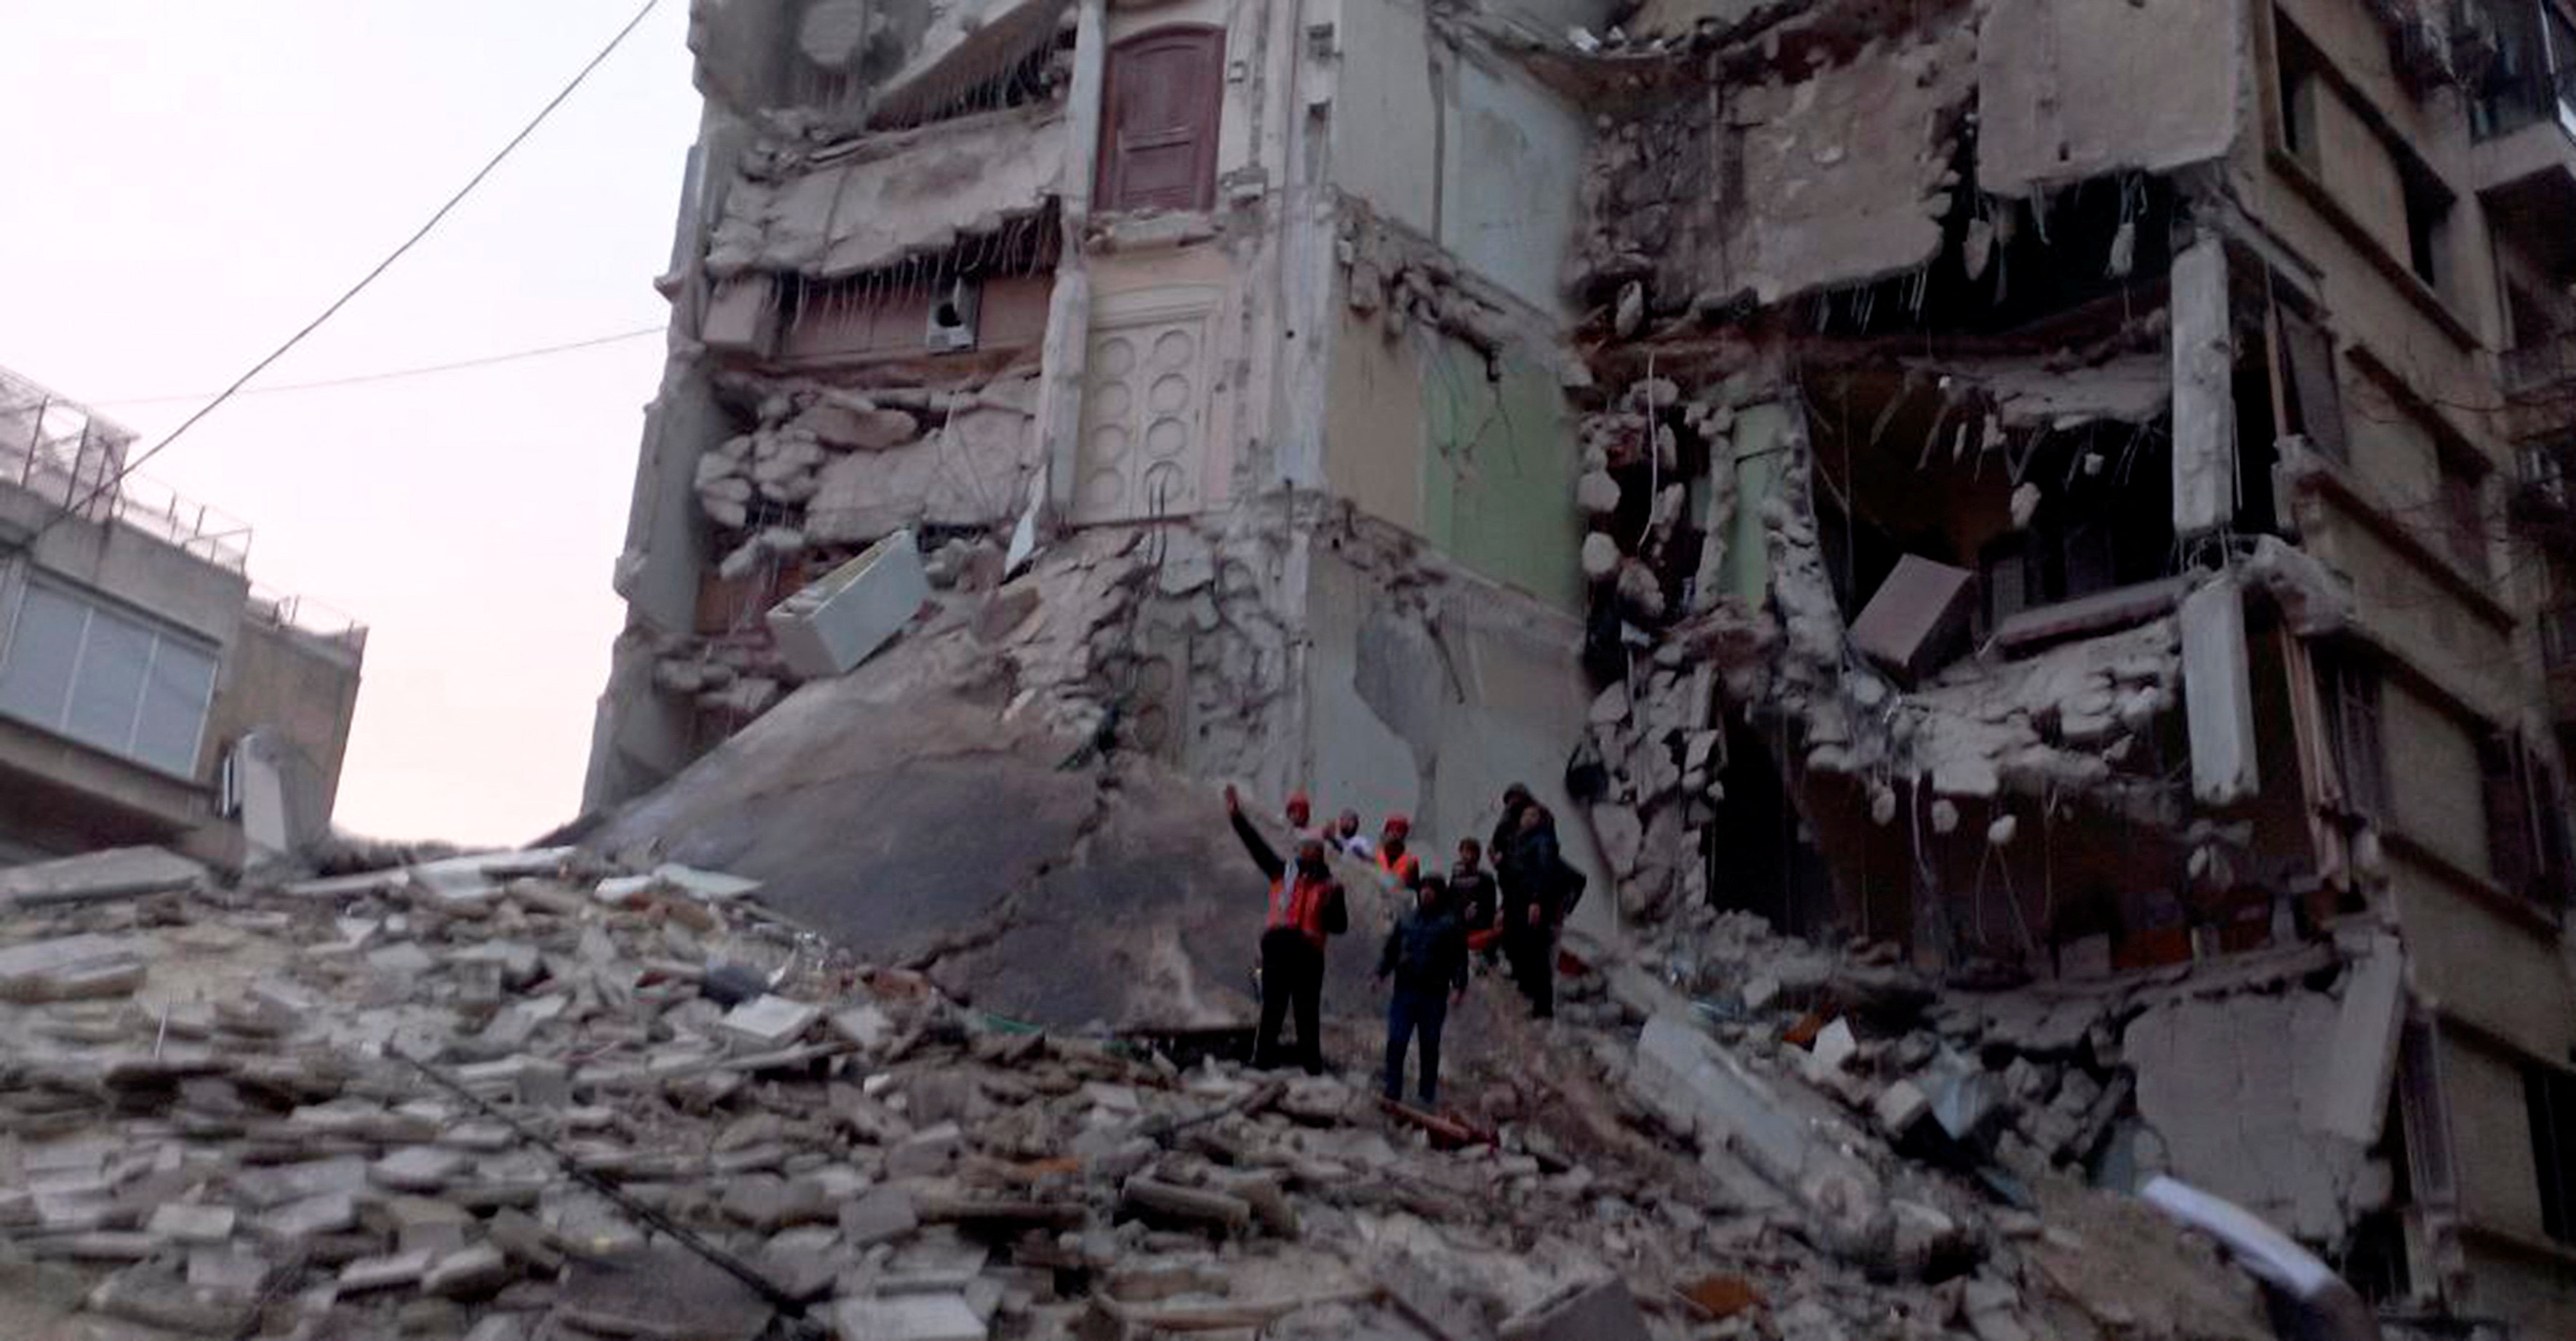 Rescatistas buscan sobrevivientes entre los escombrtos en Alepo (Sana/Reuters)